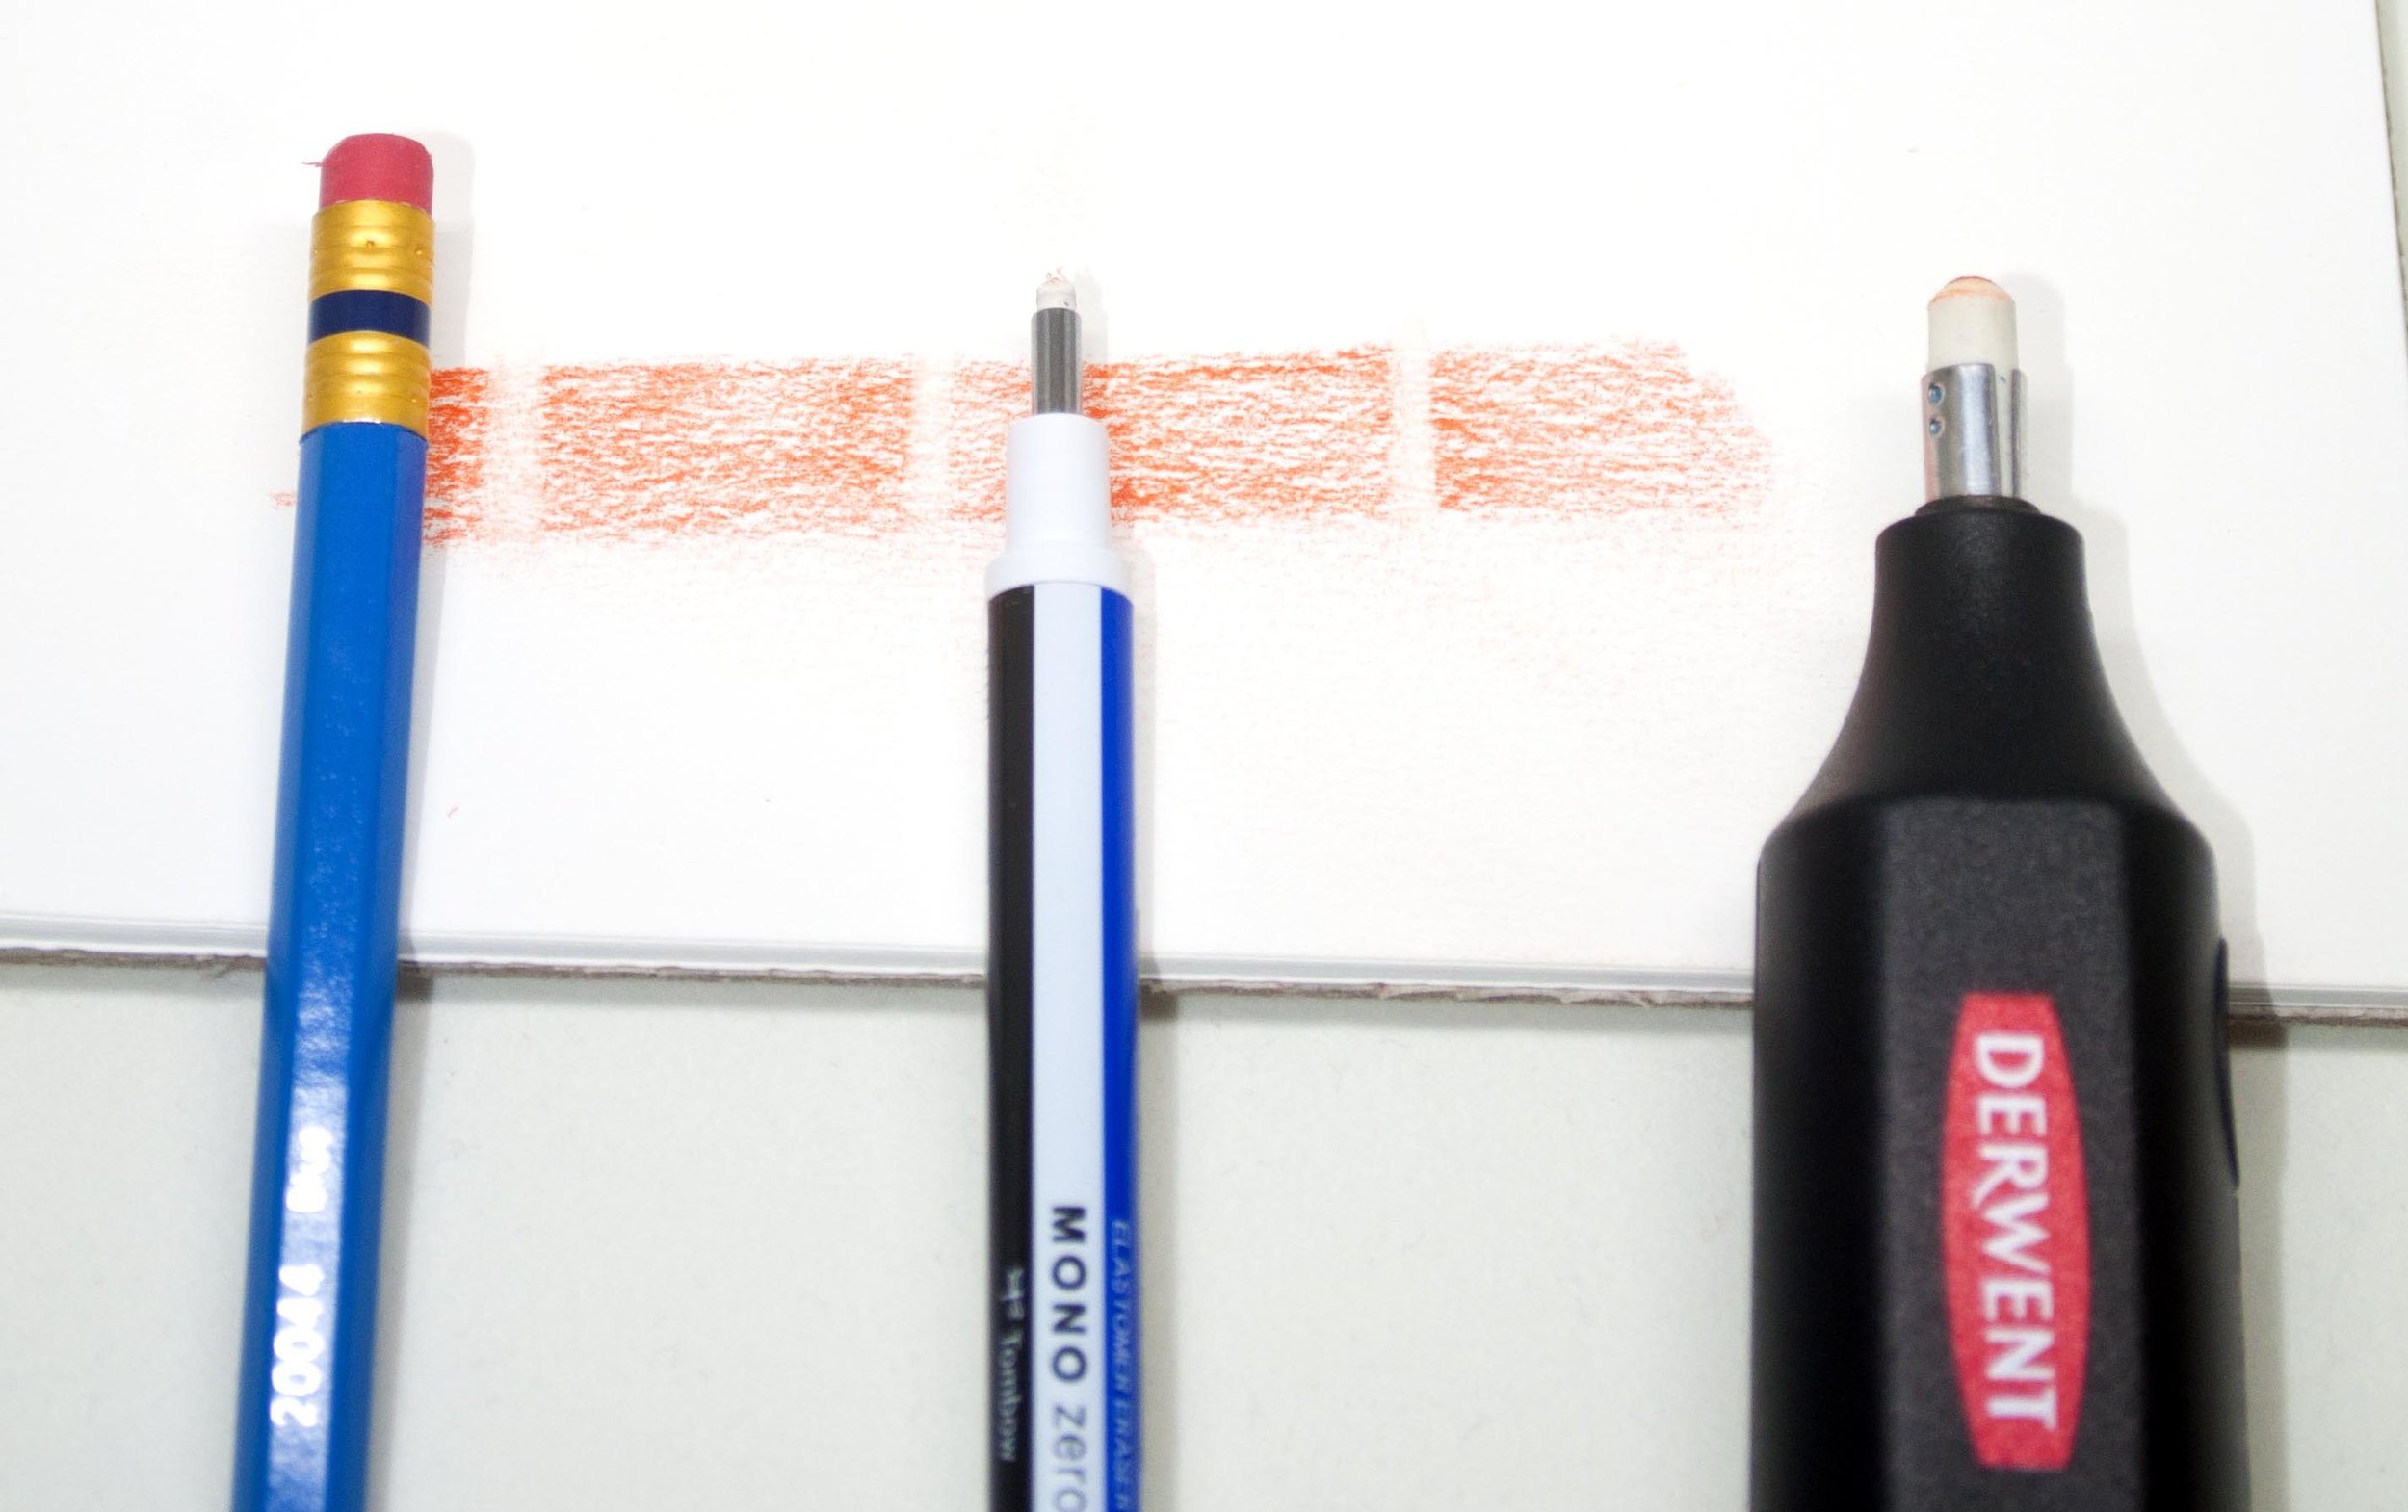 Prismacolor col-erase review & comparison erasable pencil colour first  impressions 